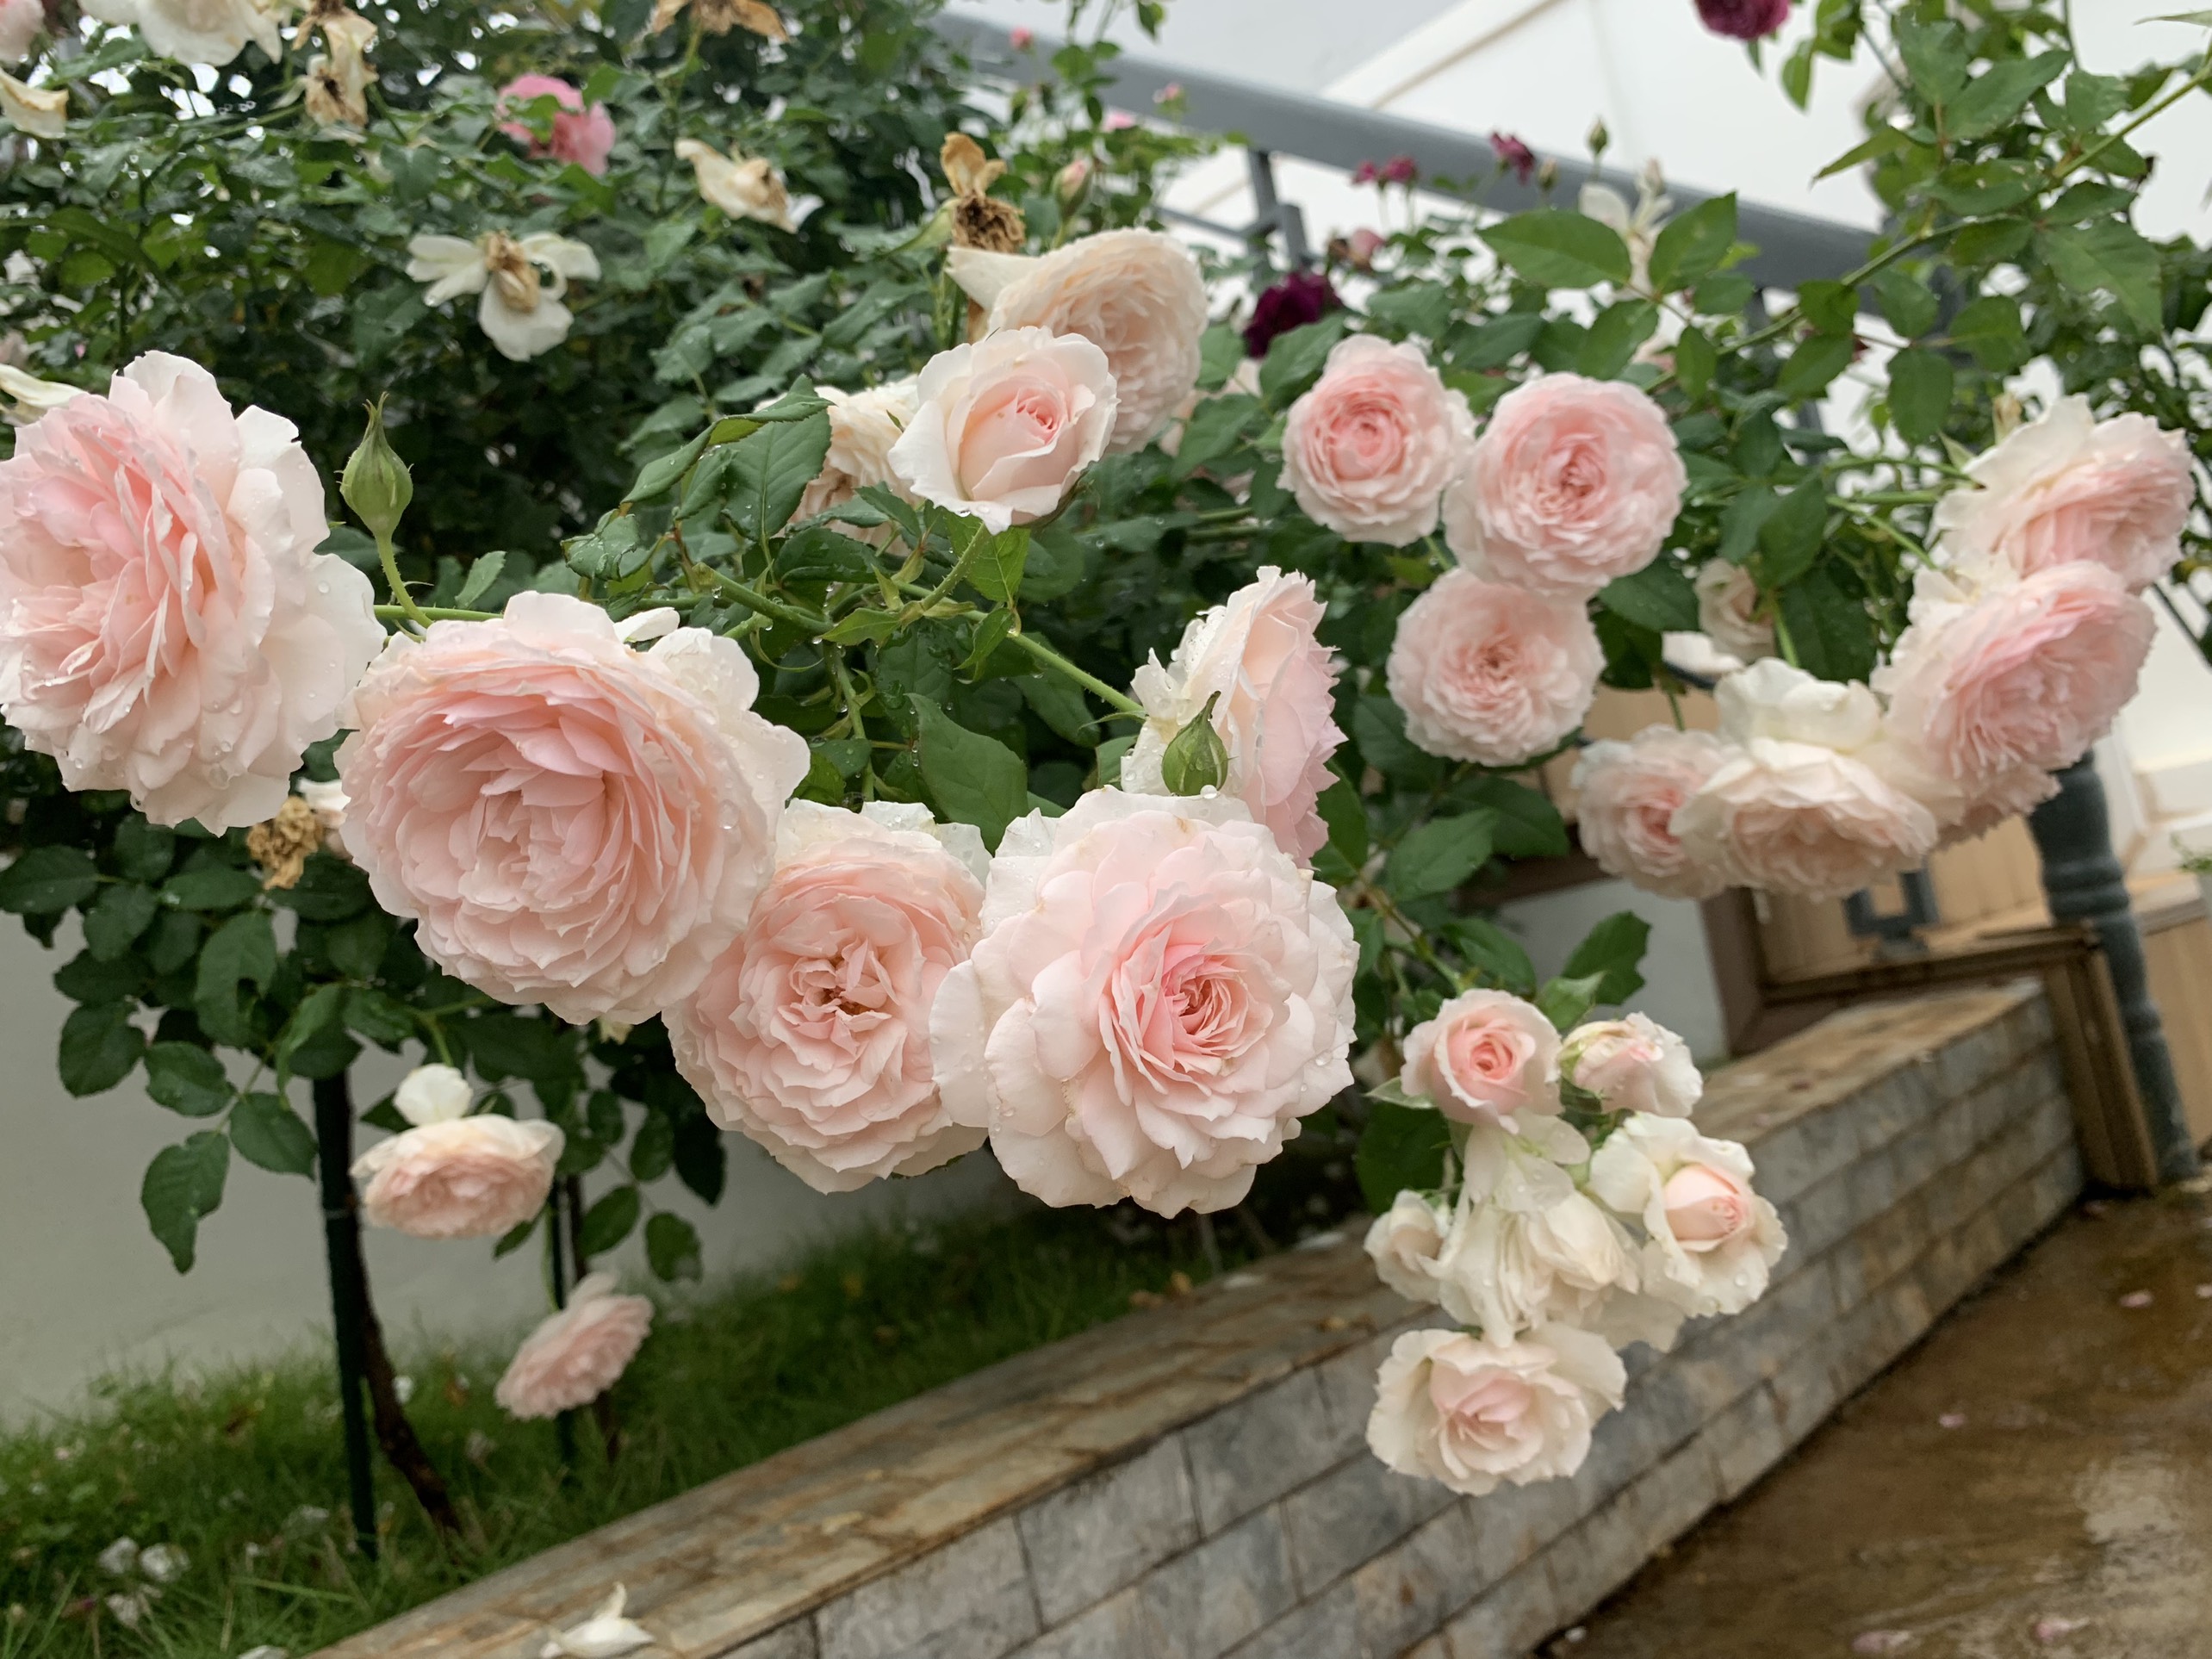 Khu vườn hoa hồng đẹp như cổ tích mà người chồng ngày đêm chăm sóc để tặng  vợ con ở Vũng Tàu